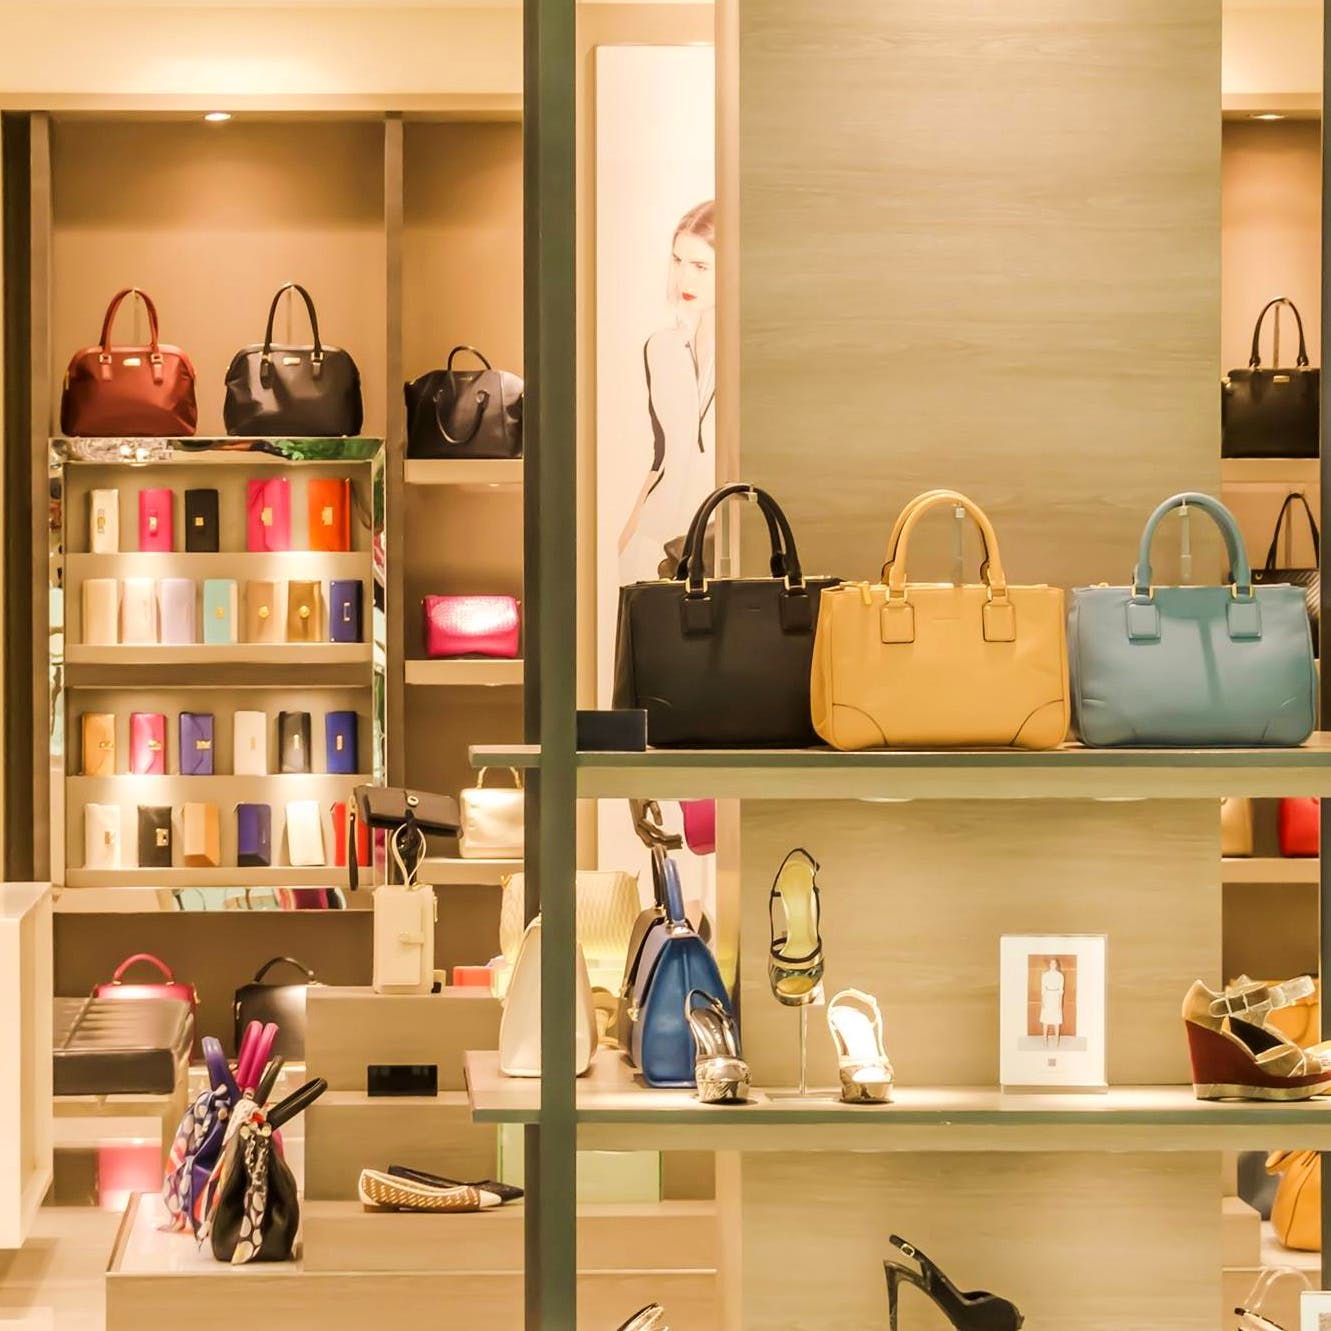 Handbag,Shelf,Bag,Furniture,Building,Shelving,Room,Fashion accessory,Interior design,Retail